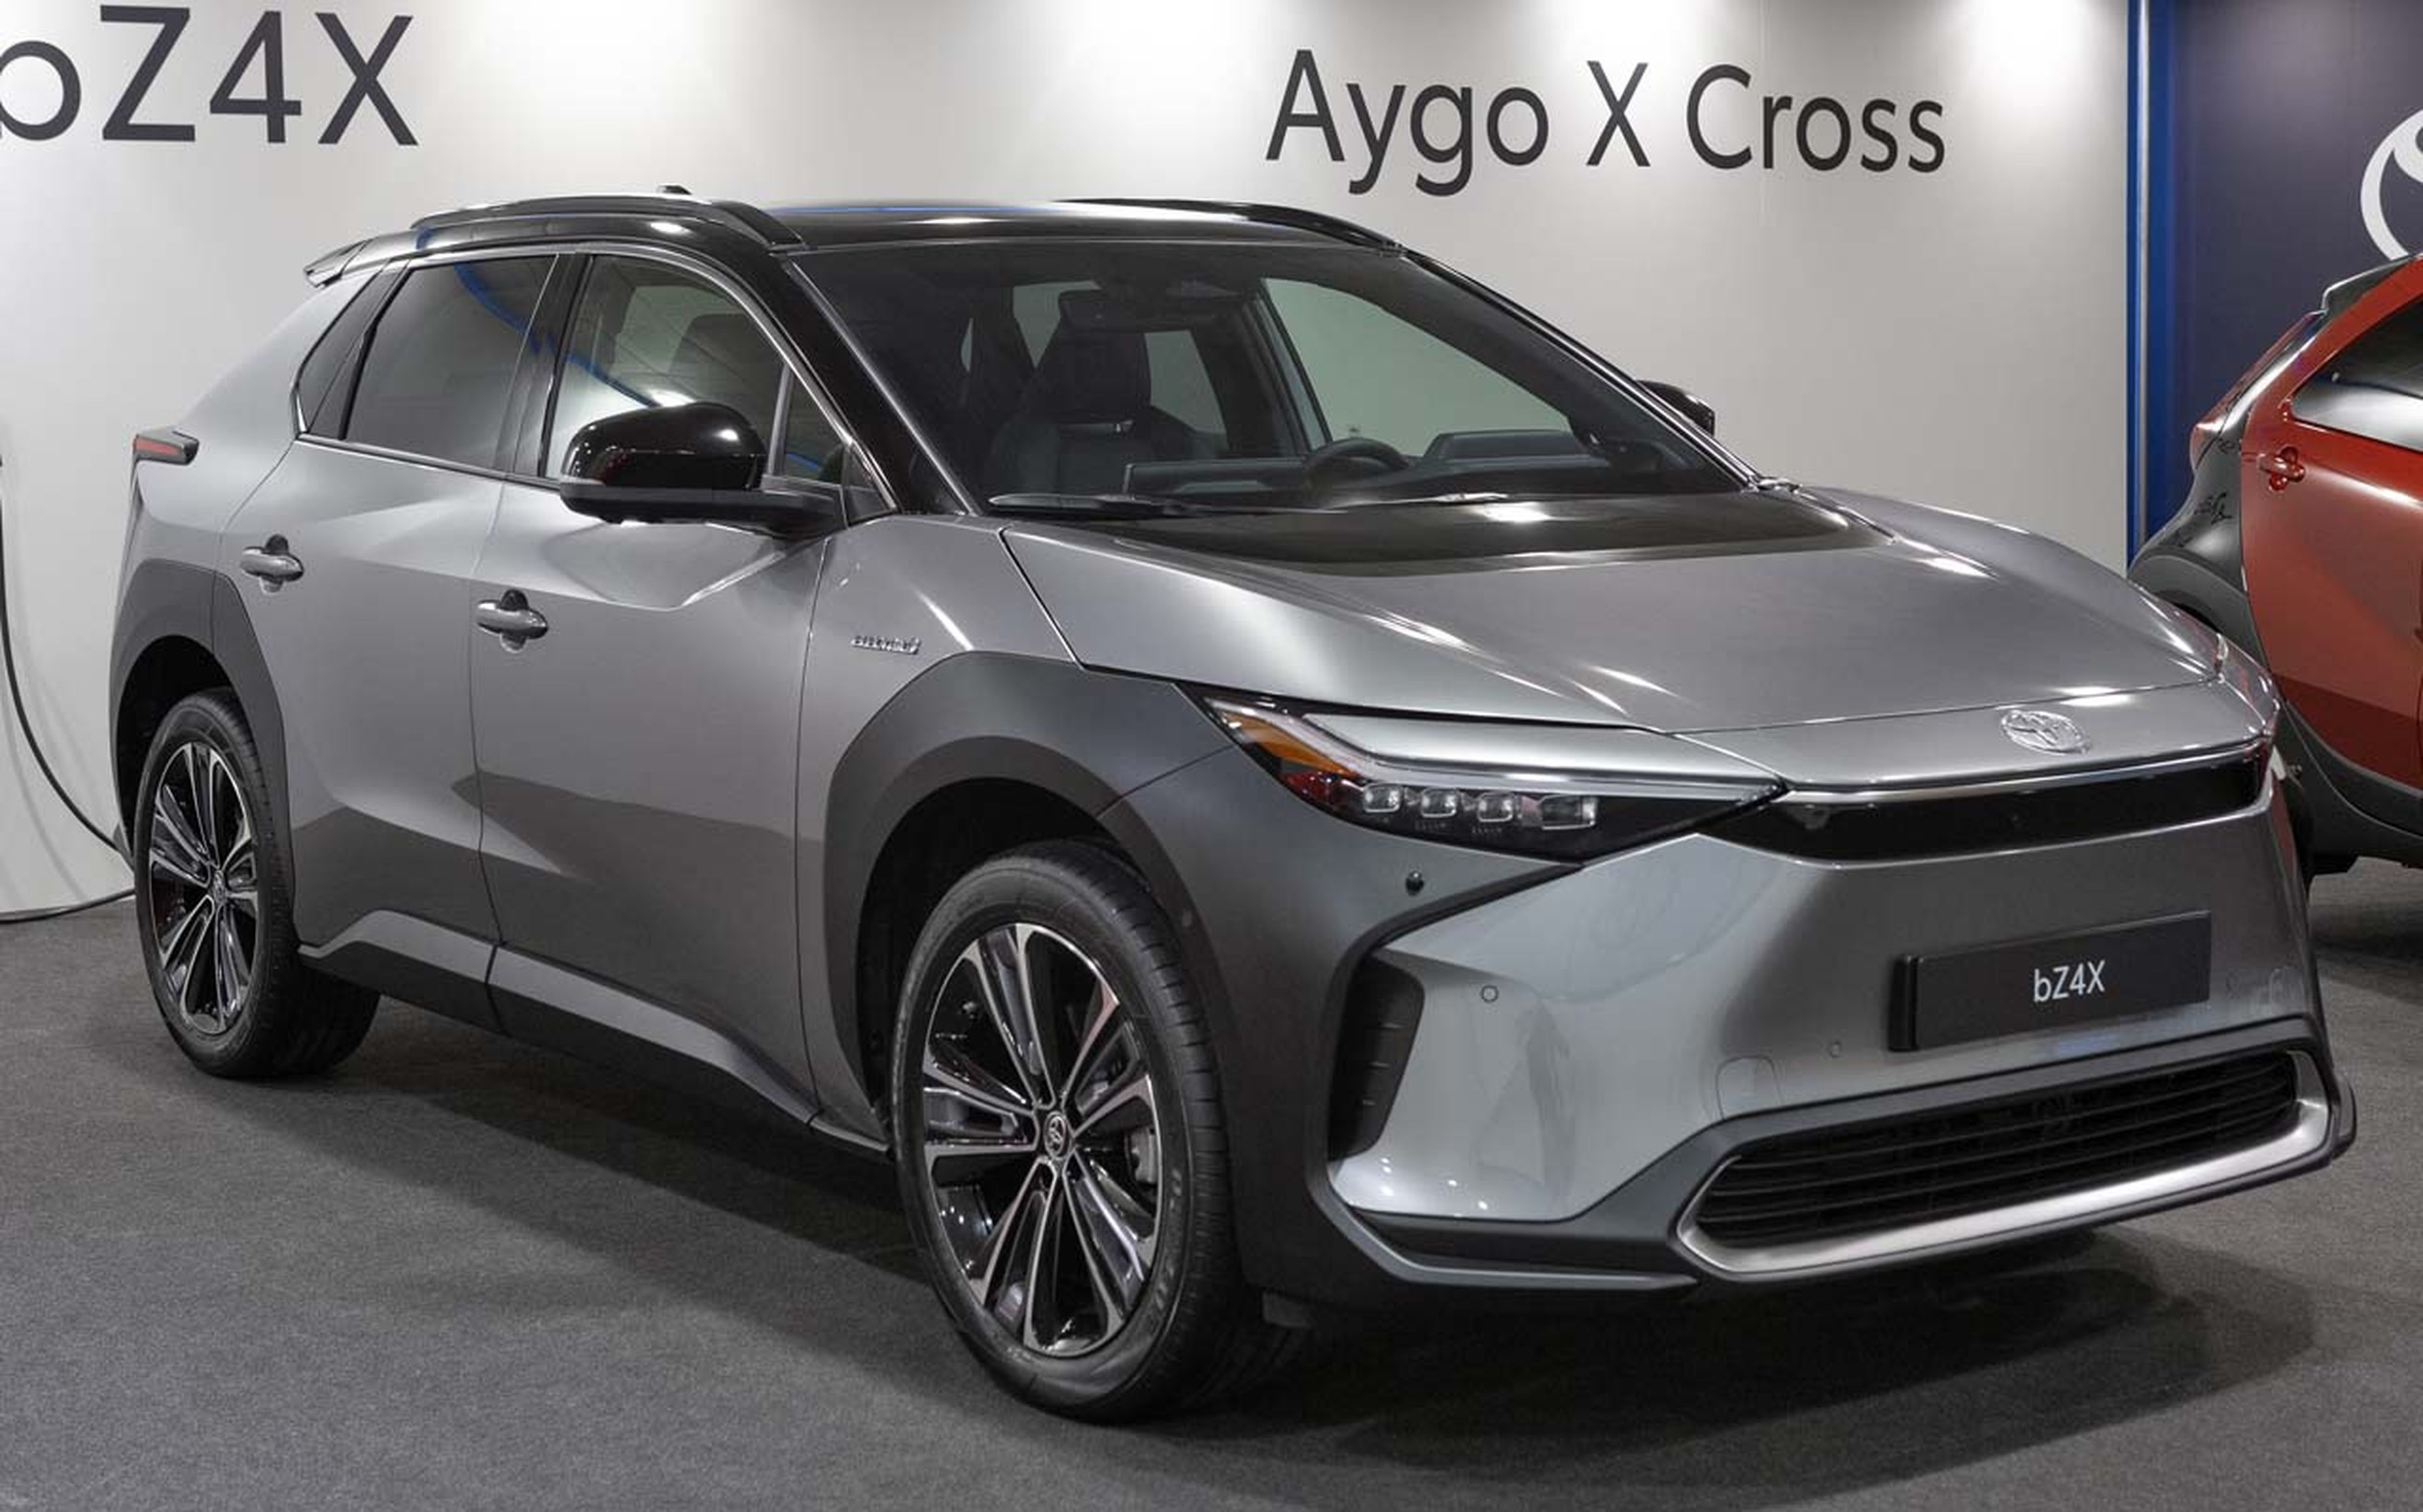 Novedades Toyota 2022: bz4x